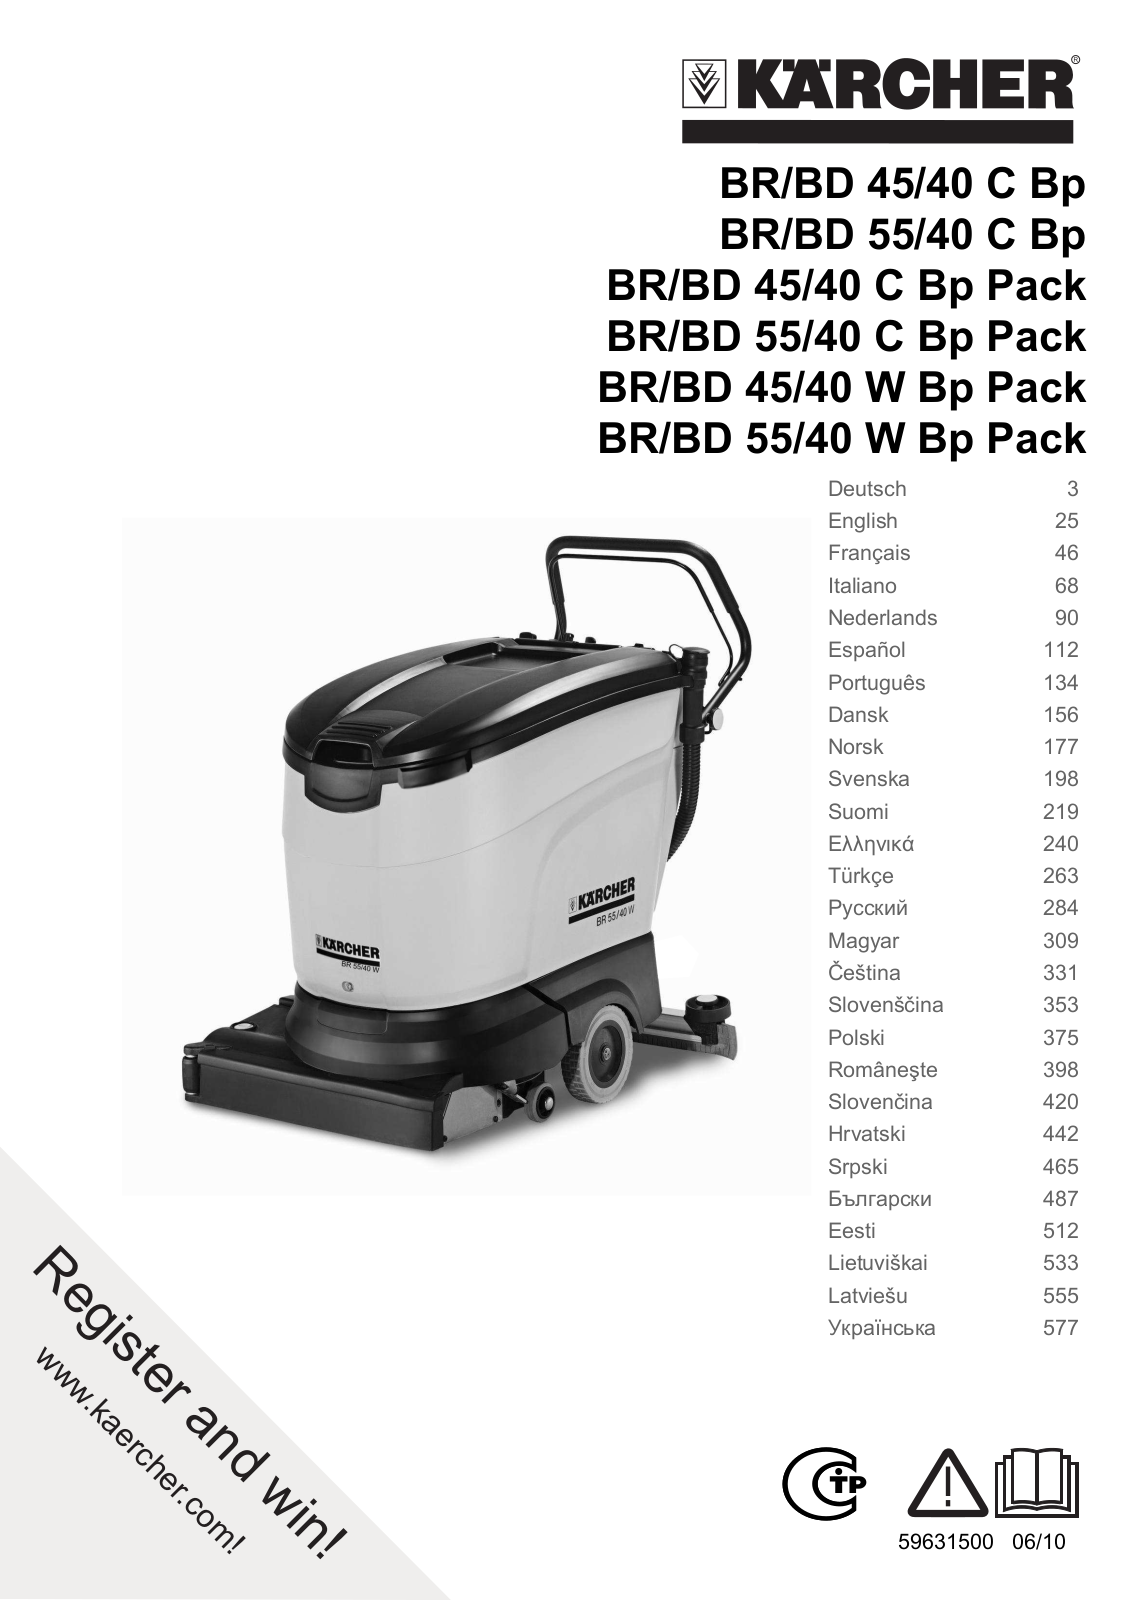 Karcher BD 55/40 C Bp Pack User Manual